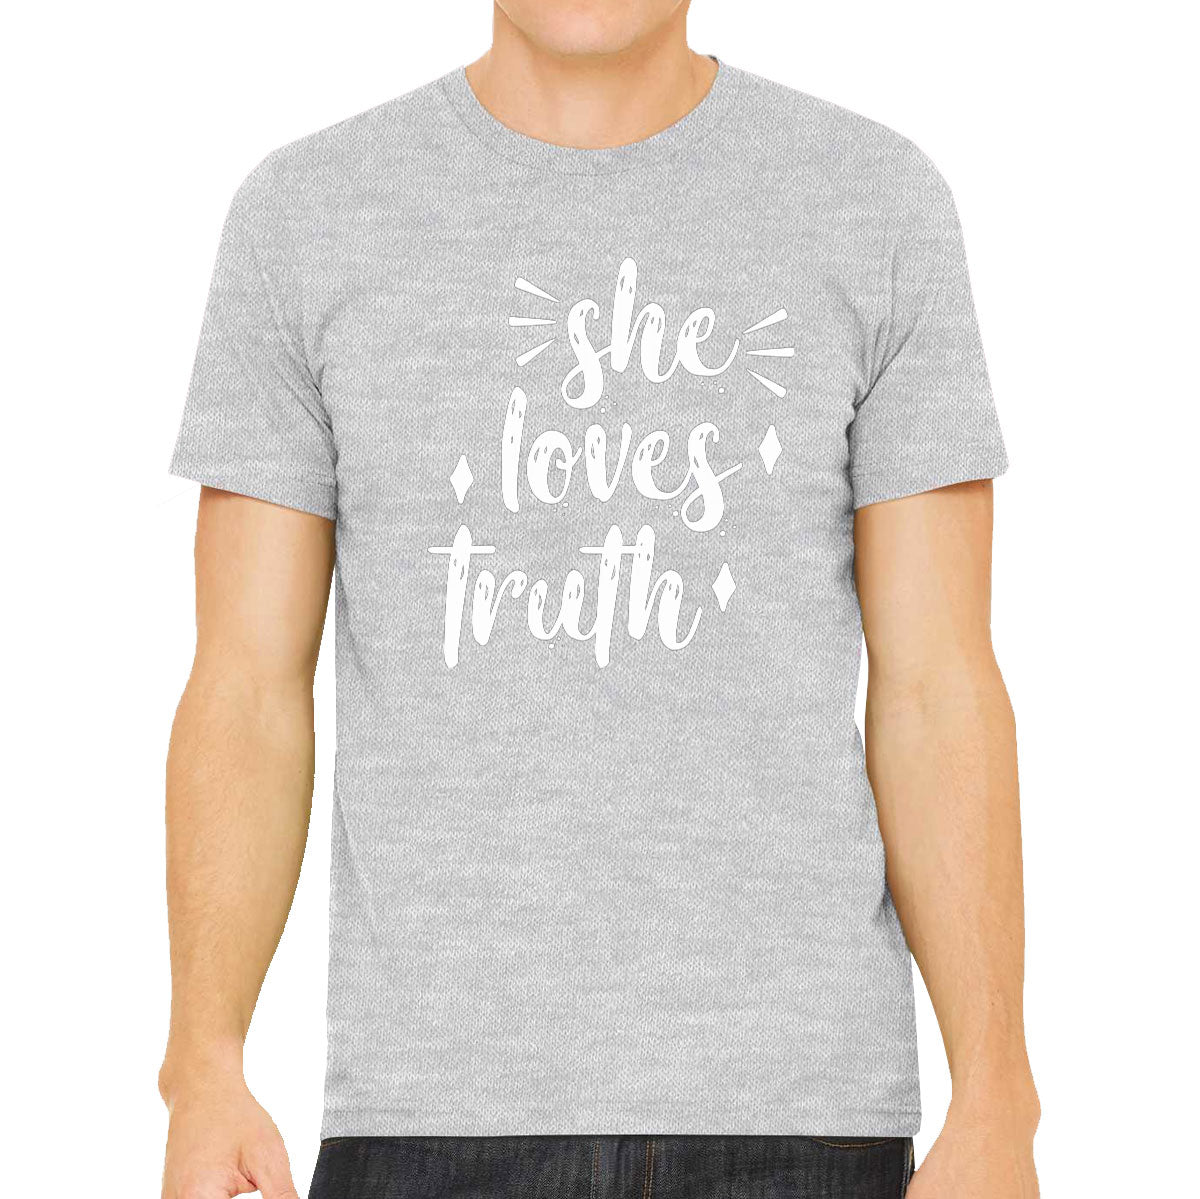 She Loves Truth Valentine's Day Men's T-shirt